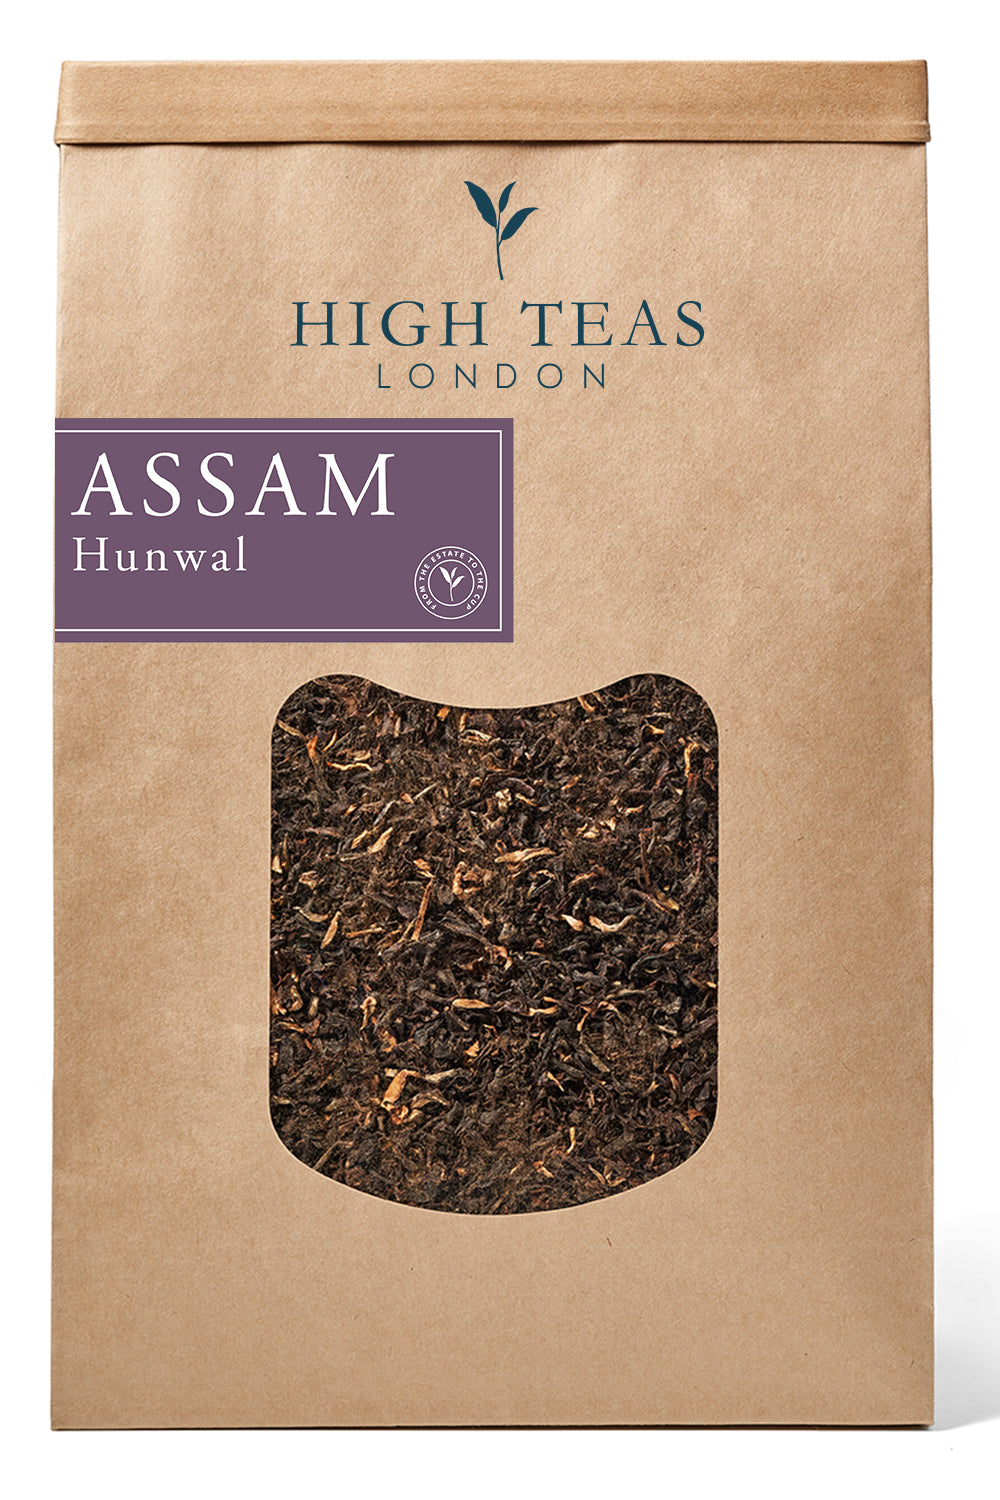 Assam Hunwal 2nd flush-500g-Loose Leaf Tea-High Teas